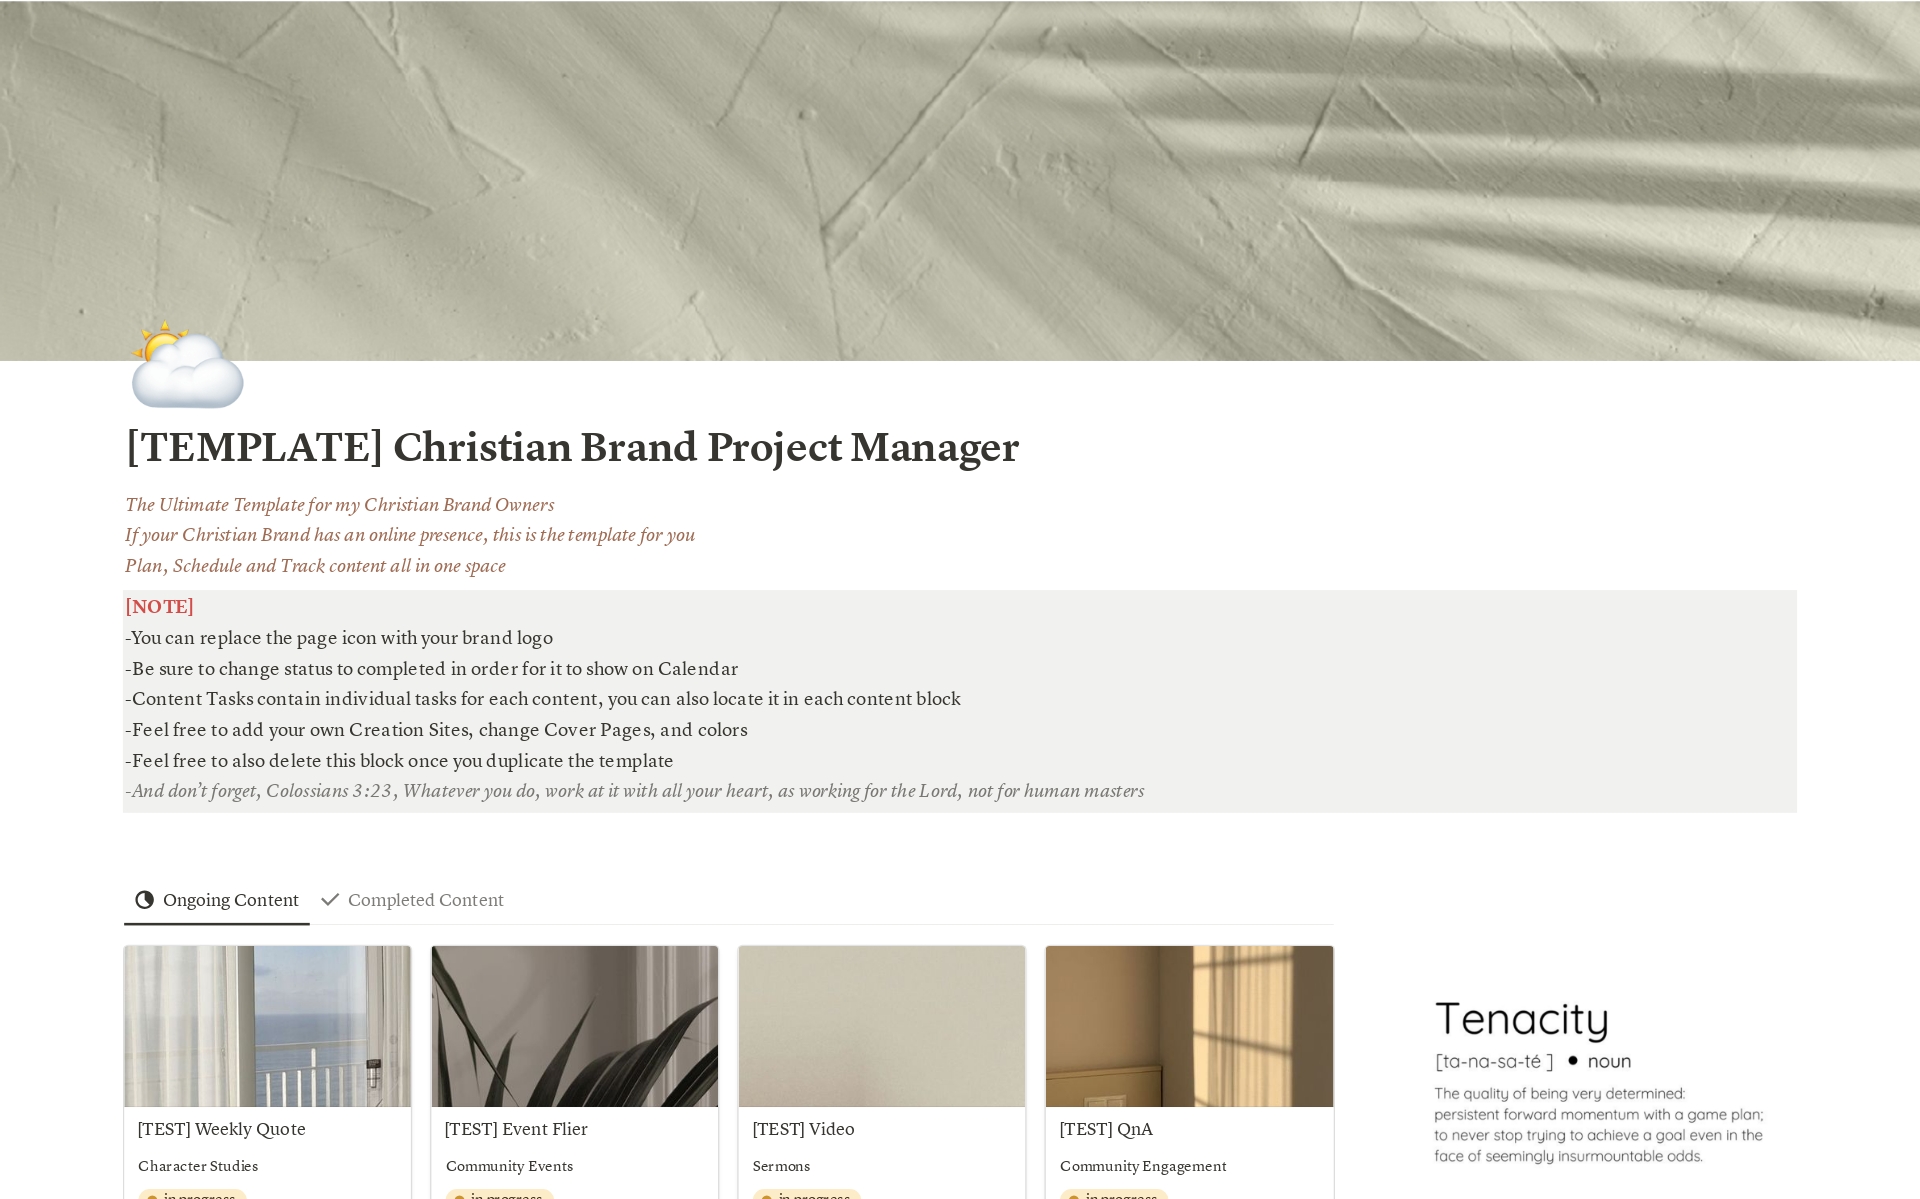 Aperçu du modèle de Christian Brand Project Manager